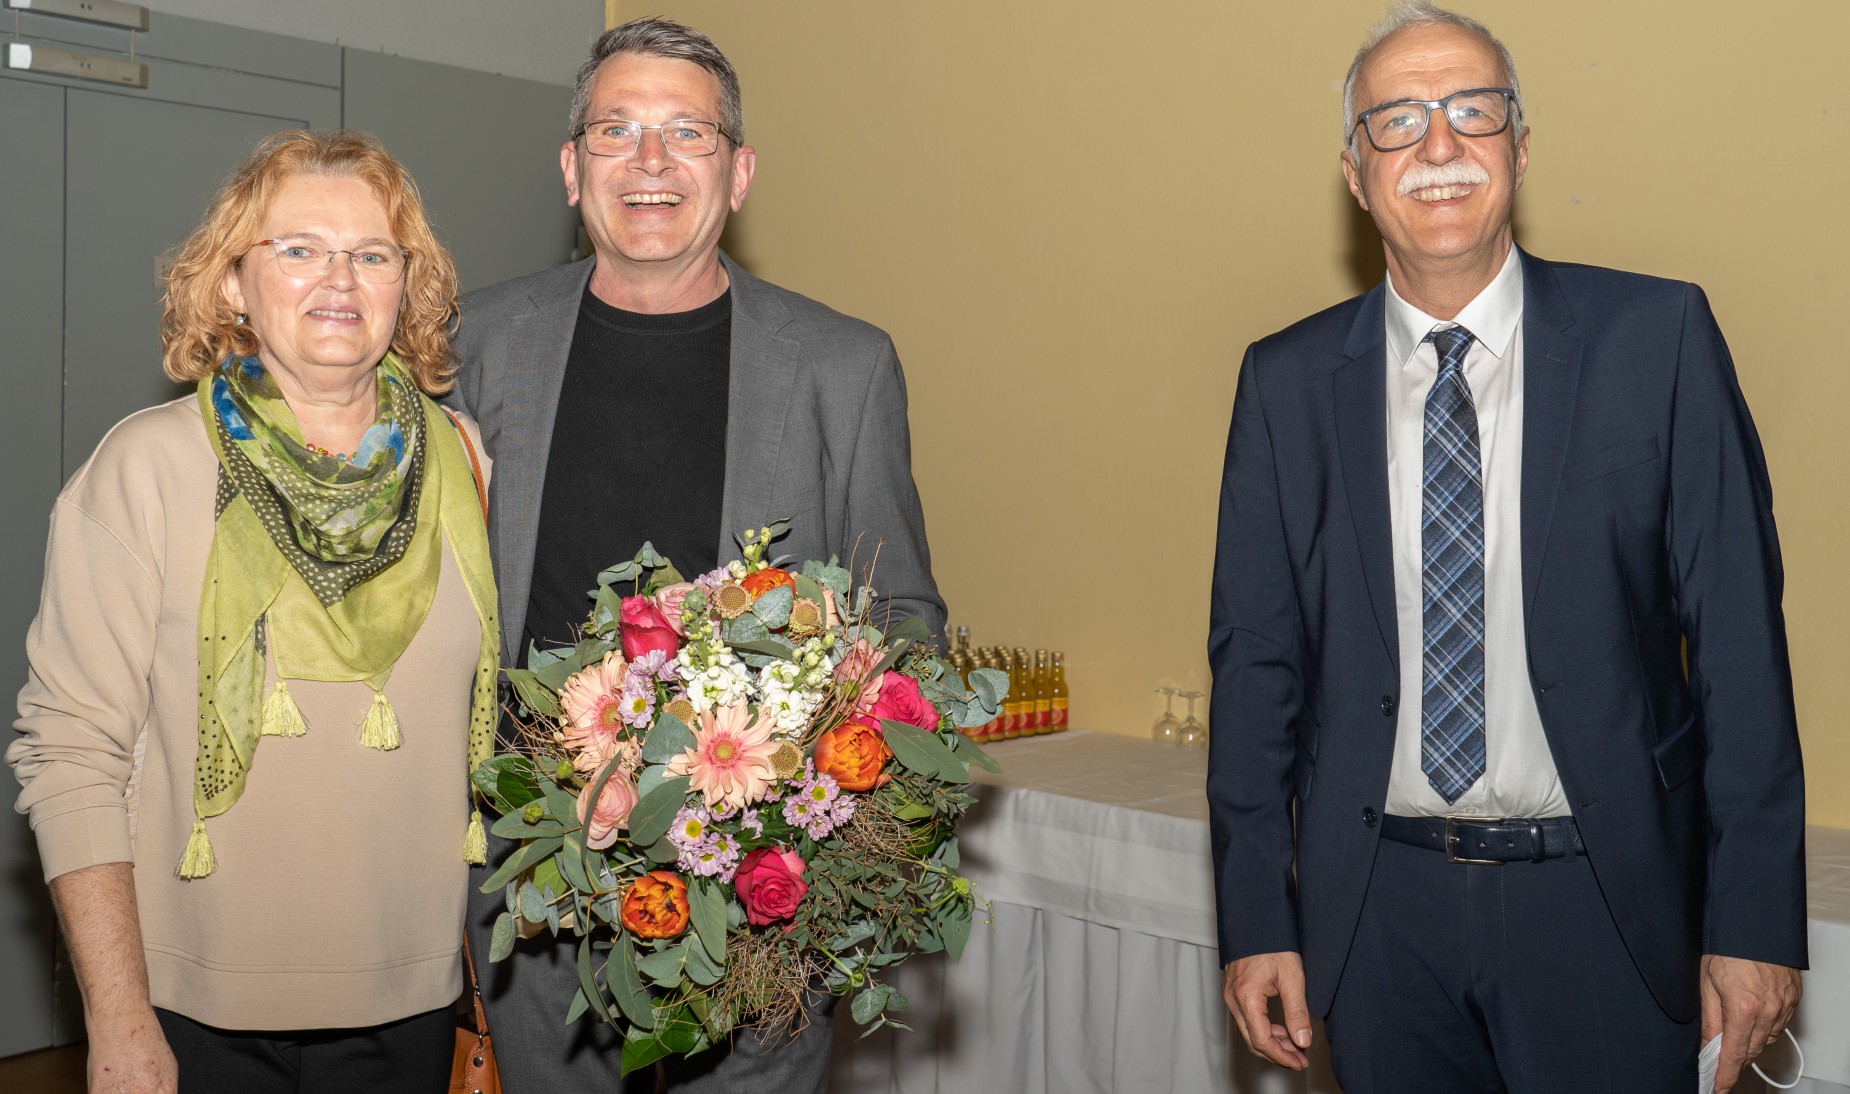 Der neu gewählte Oberbürgermeister Wolfram Britz steht zwischen seiner Ehefrau Iris Britz (links) und Amtsinhaber Toni Vetrano.